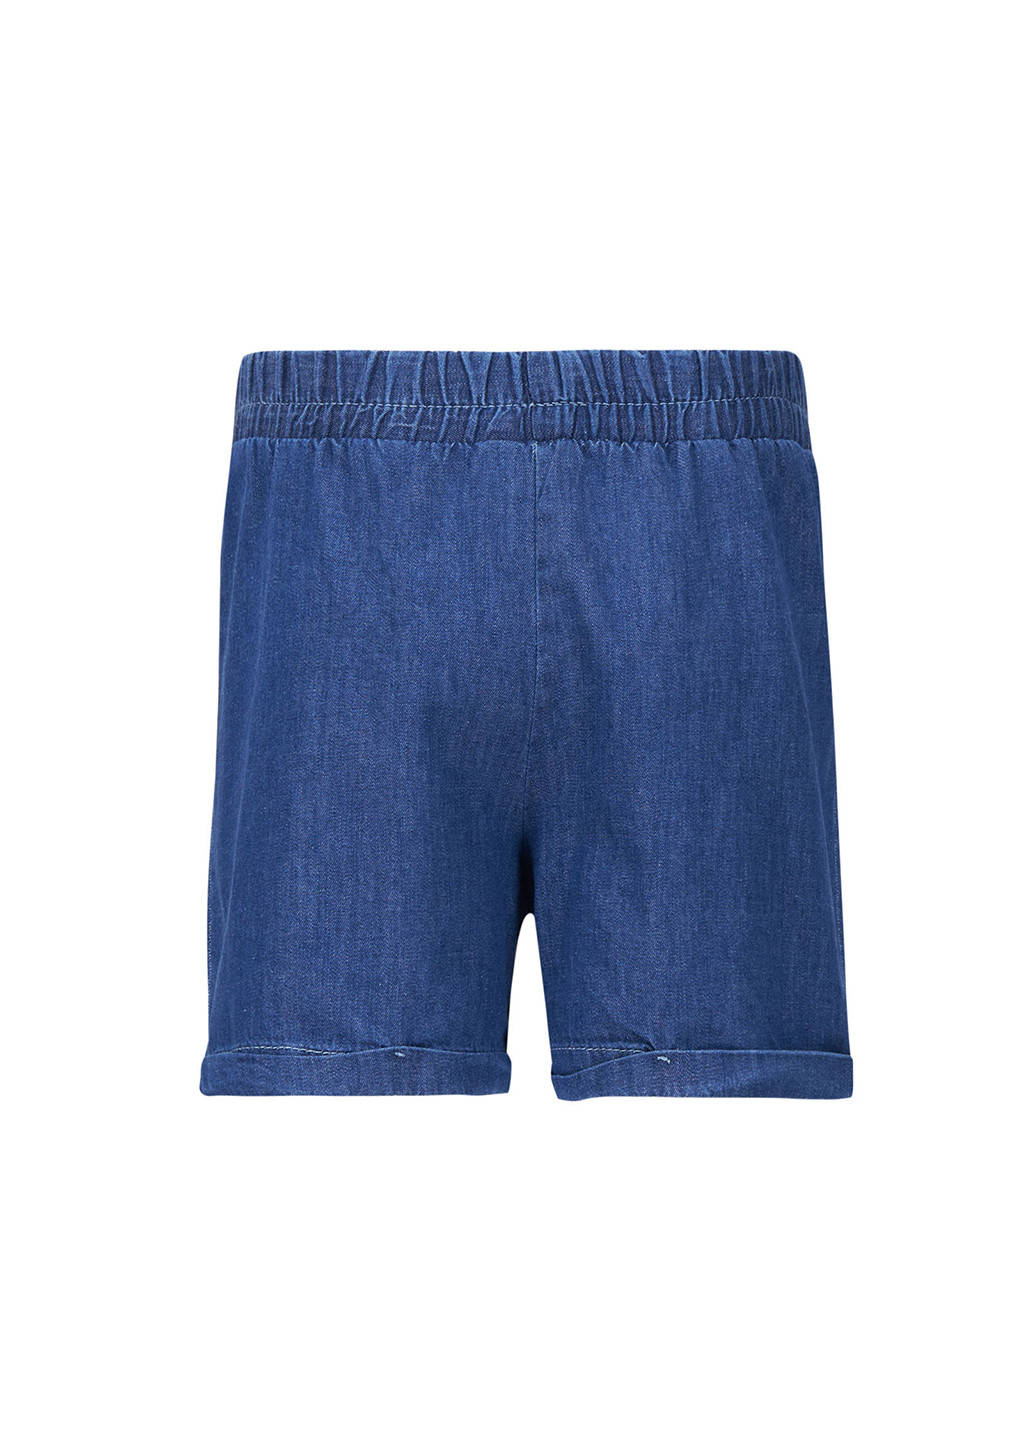 Шорты DeFacto тёмно-синие джинсовые хлопок